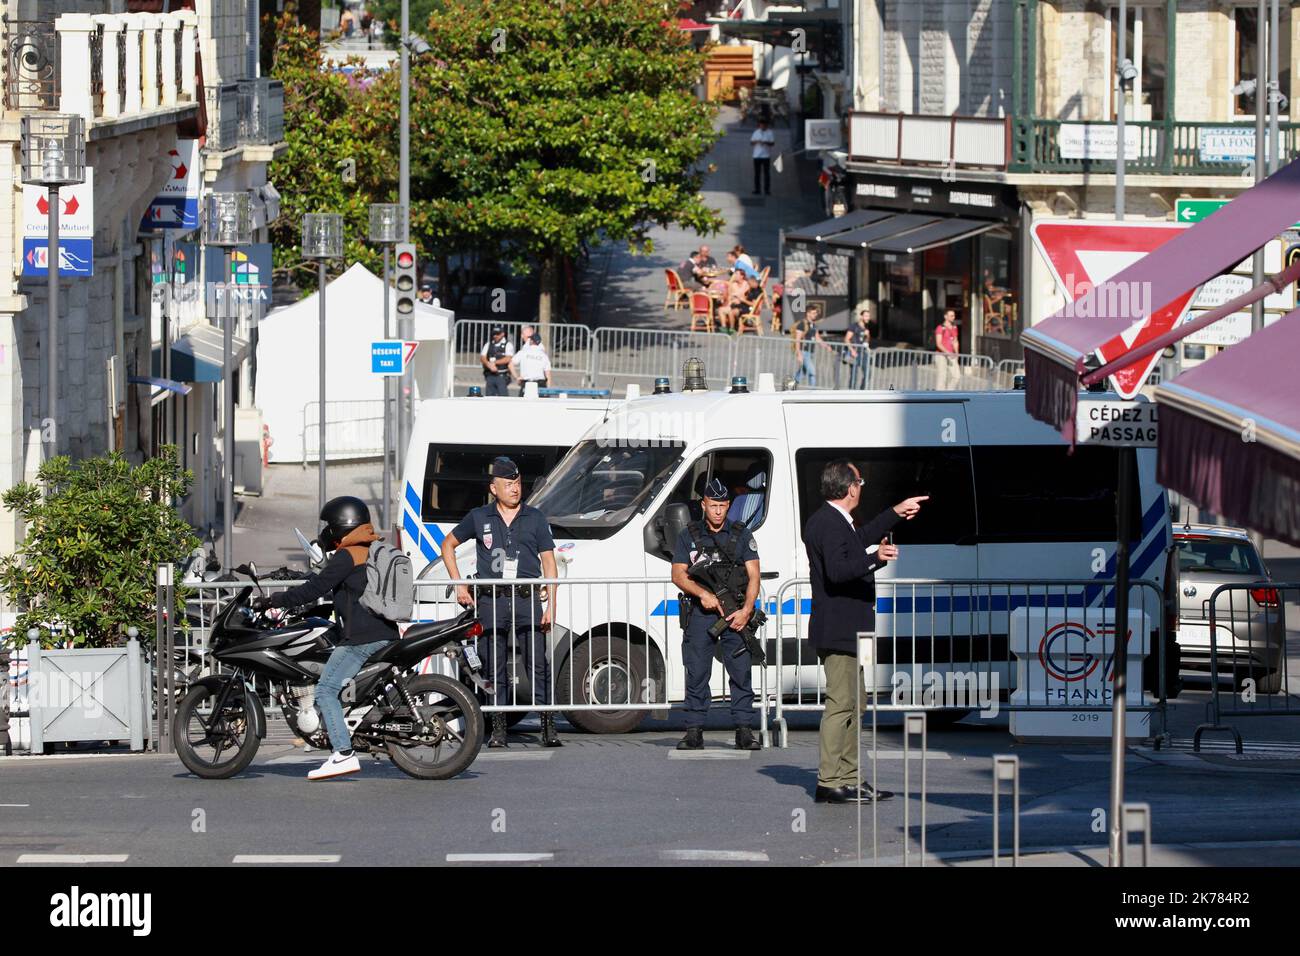 sommet du G7 Biarritz sous la cloche barrage de la zone1 avenue de verdun PHOTO : Chopin Jean Daniel G7 Biarritz : plus de 13 200 policiers en alerte sécurité AOÛT 23 2019 Banque D'Images